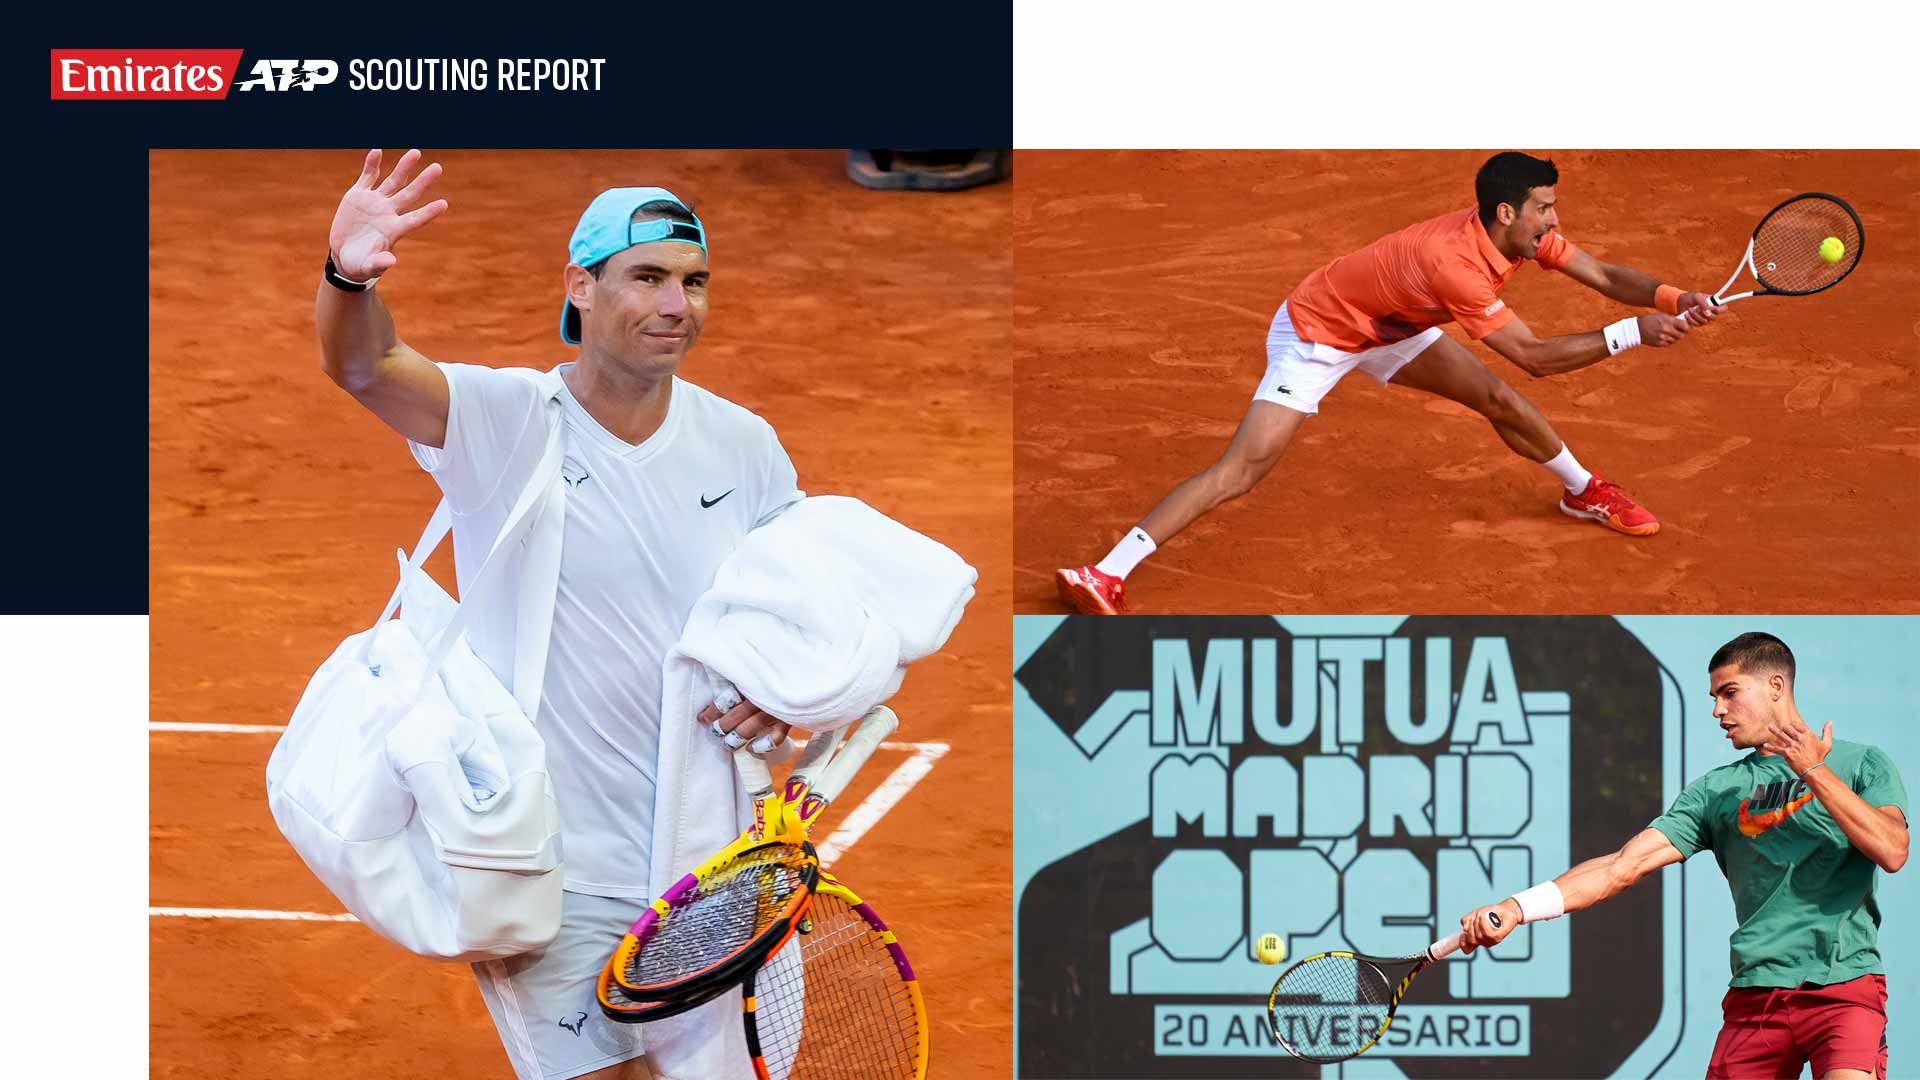 Scouting Report Rafael Nadal, Novak Djokovic and Carlos Alcaraz Headline In Madrid ATP Tour Tennis